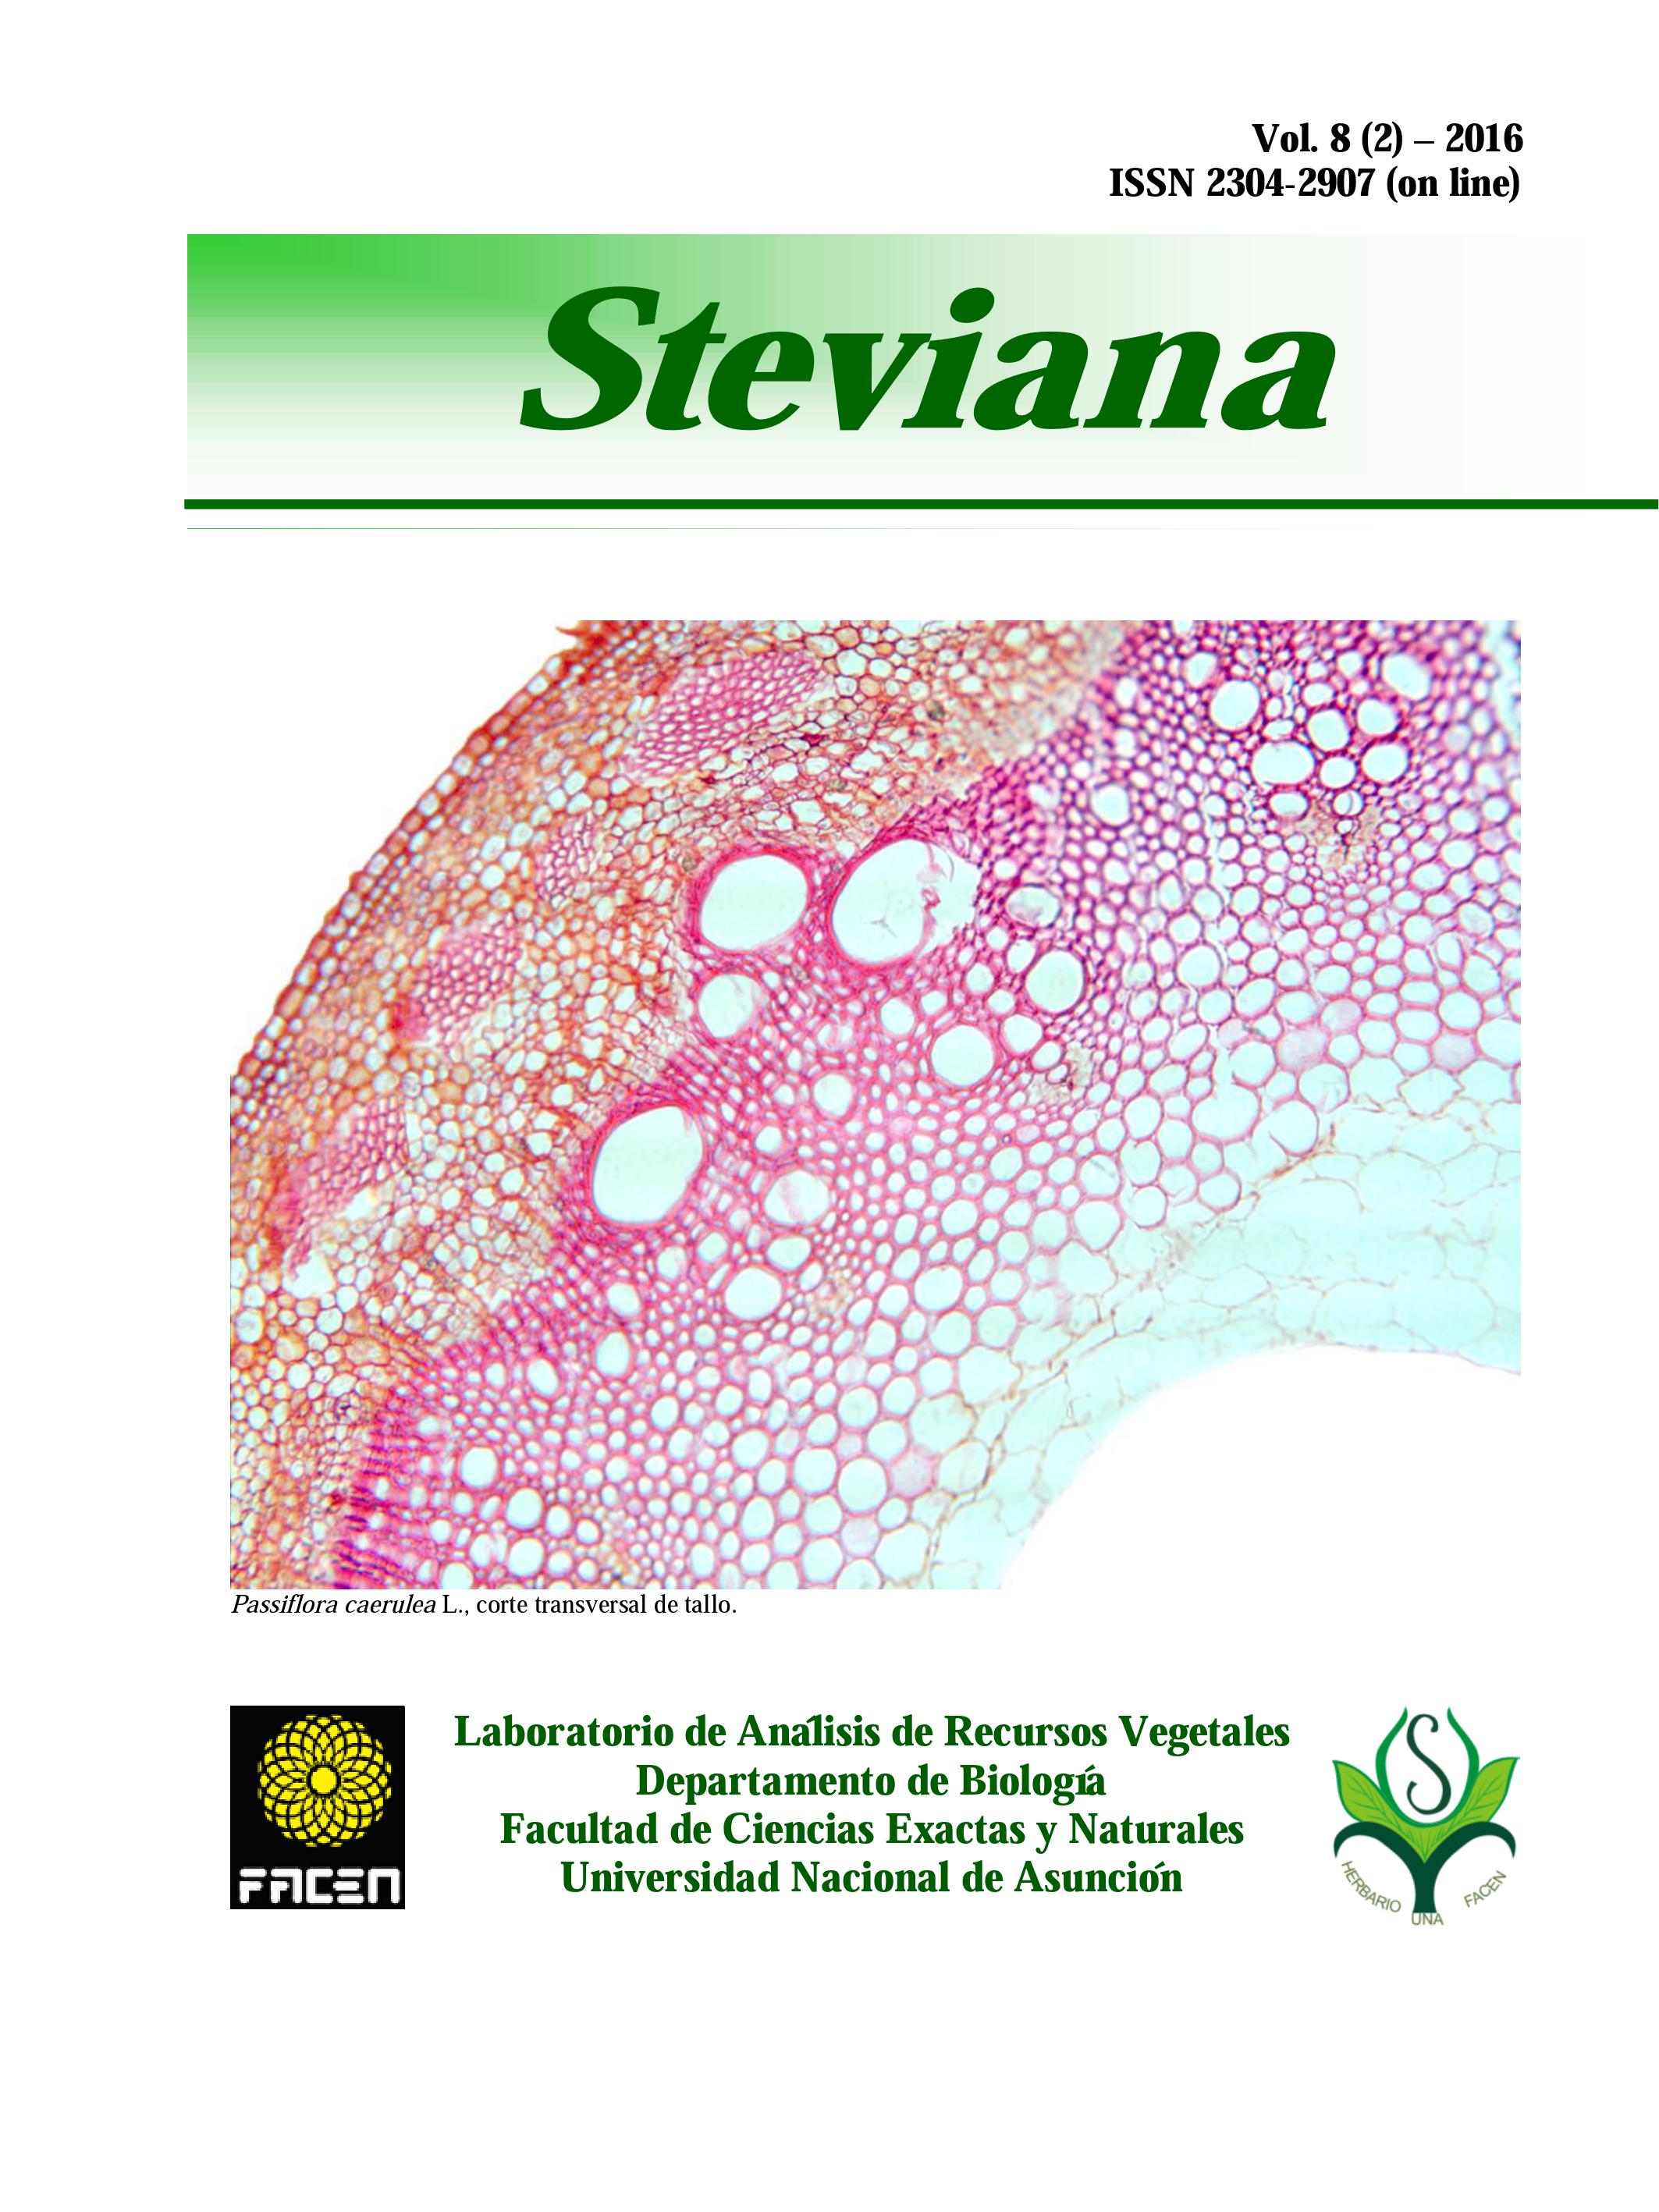 Steviana Vol 8_2